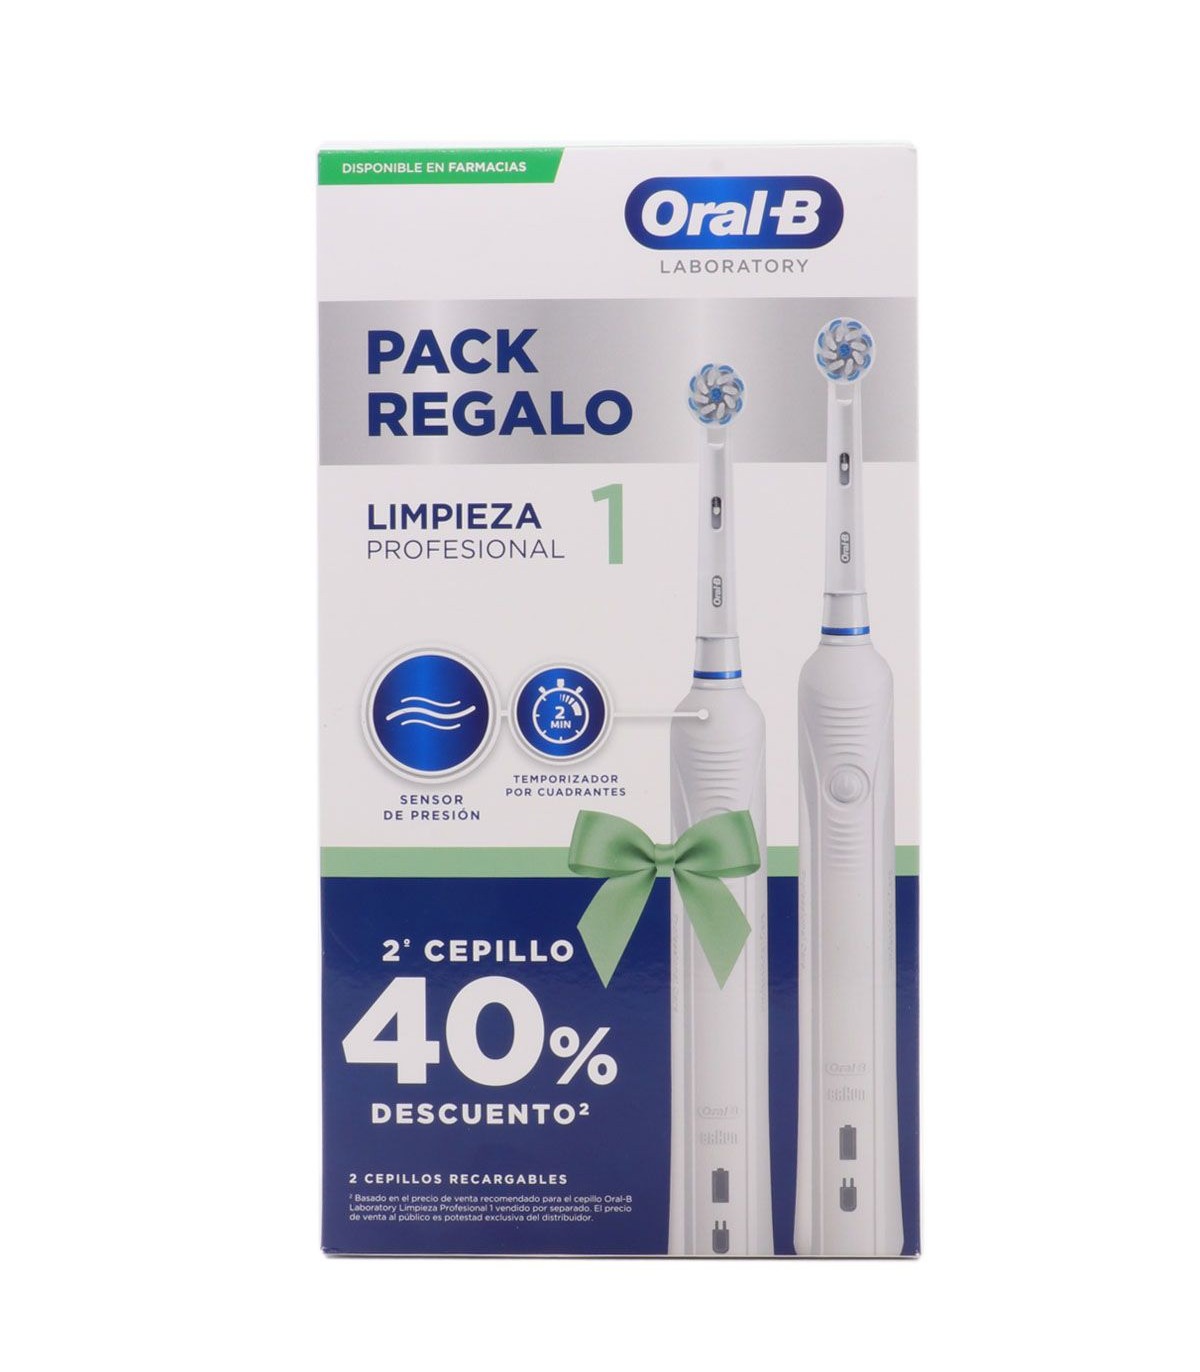 Oral B Cepillo Eléctrico Limpieza Profesional 1 Duplo 40%Dto 2º